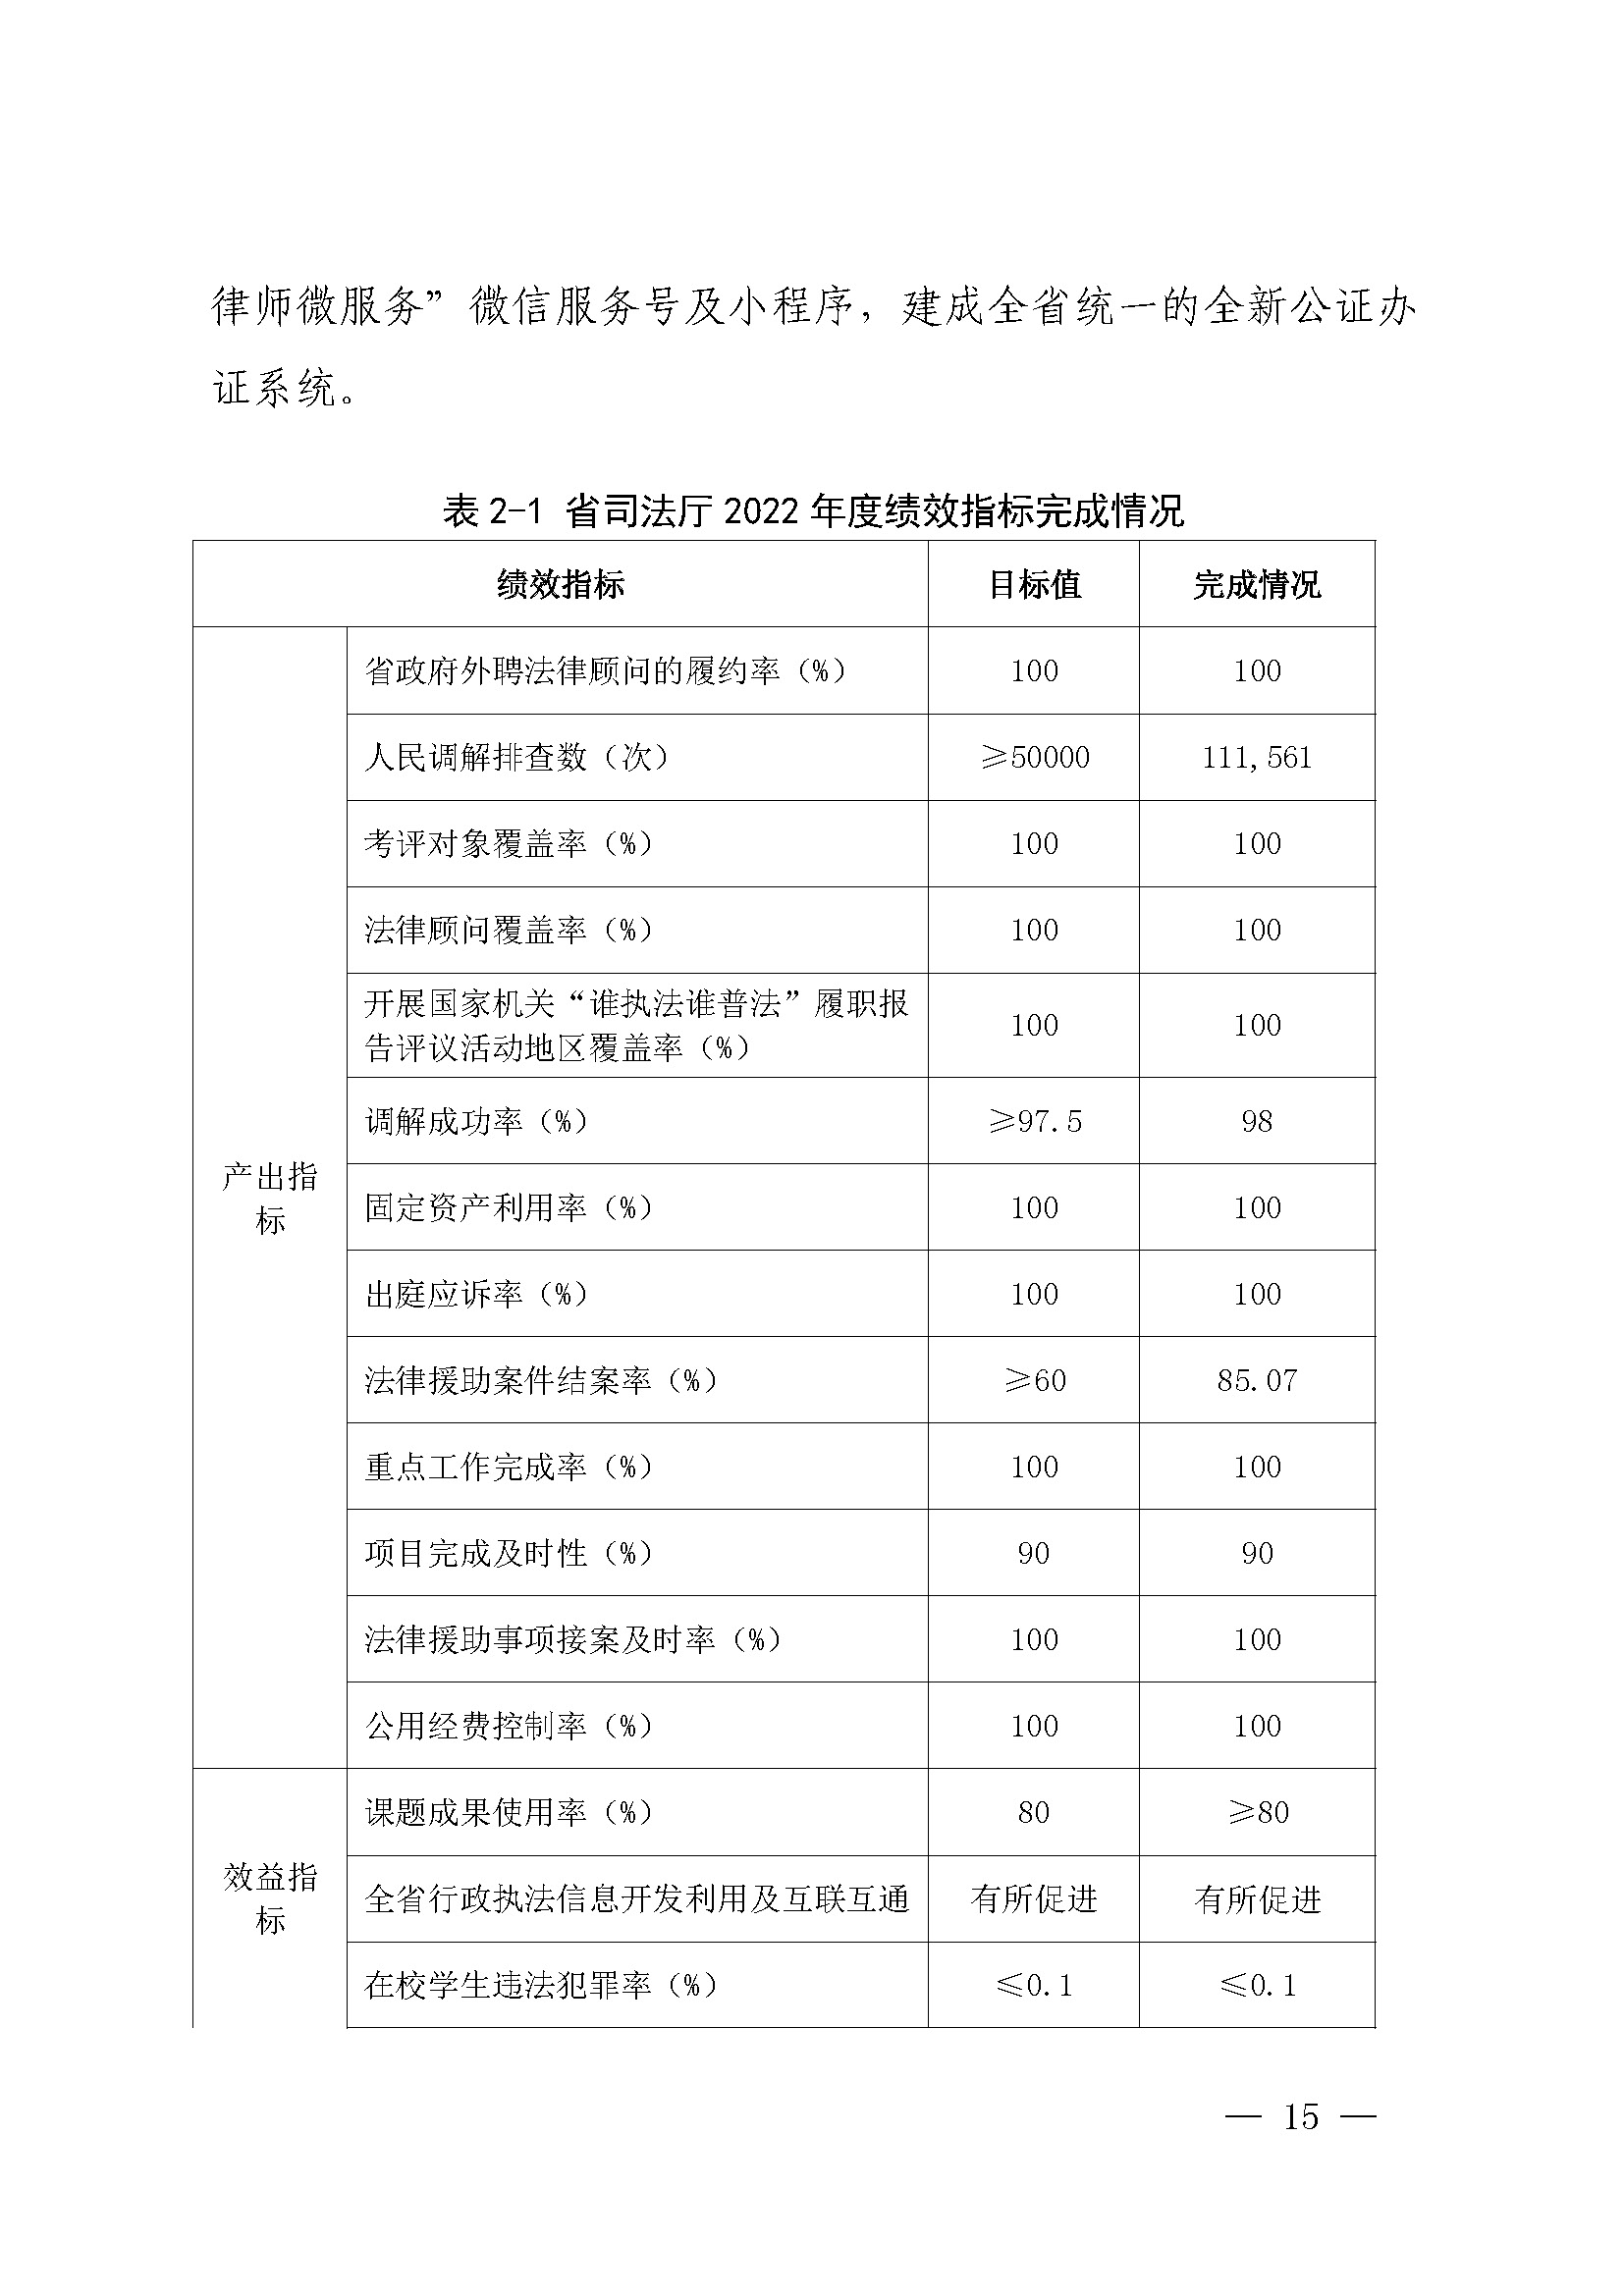 广东省司法厅2022年度部门整体支出绩效自评报告_页面_15.jpg